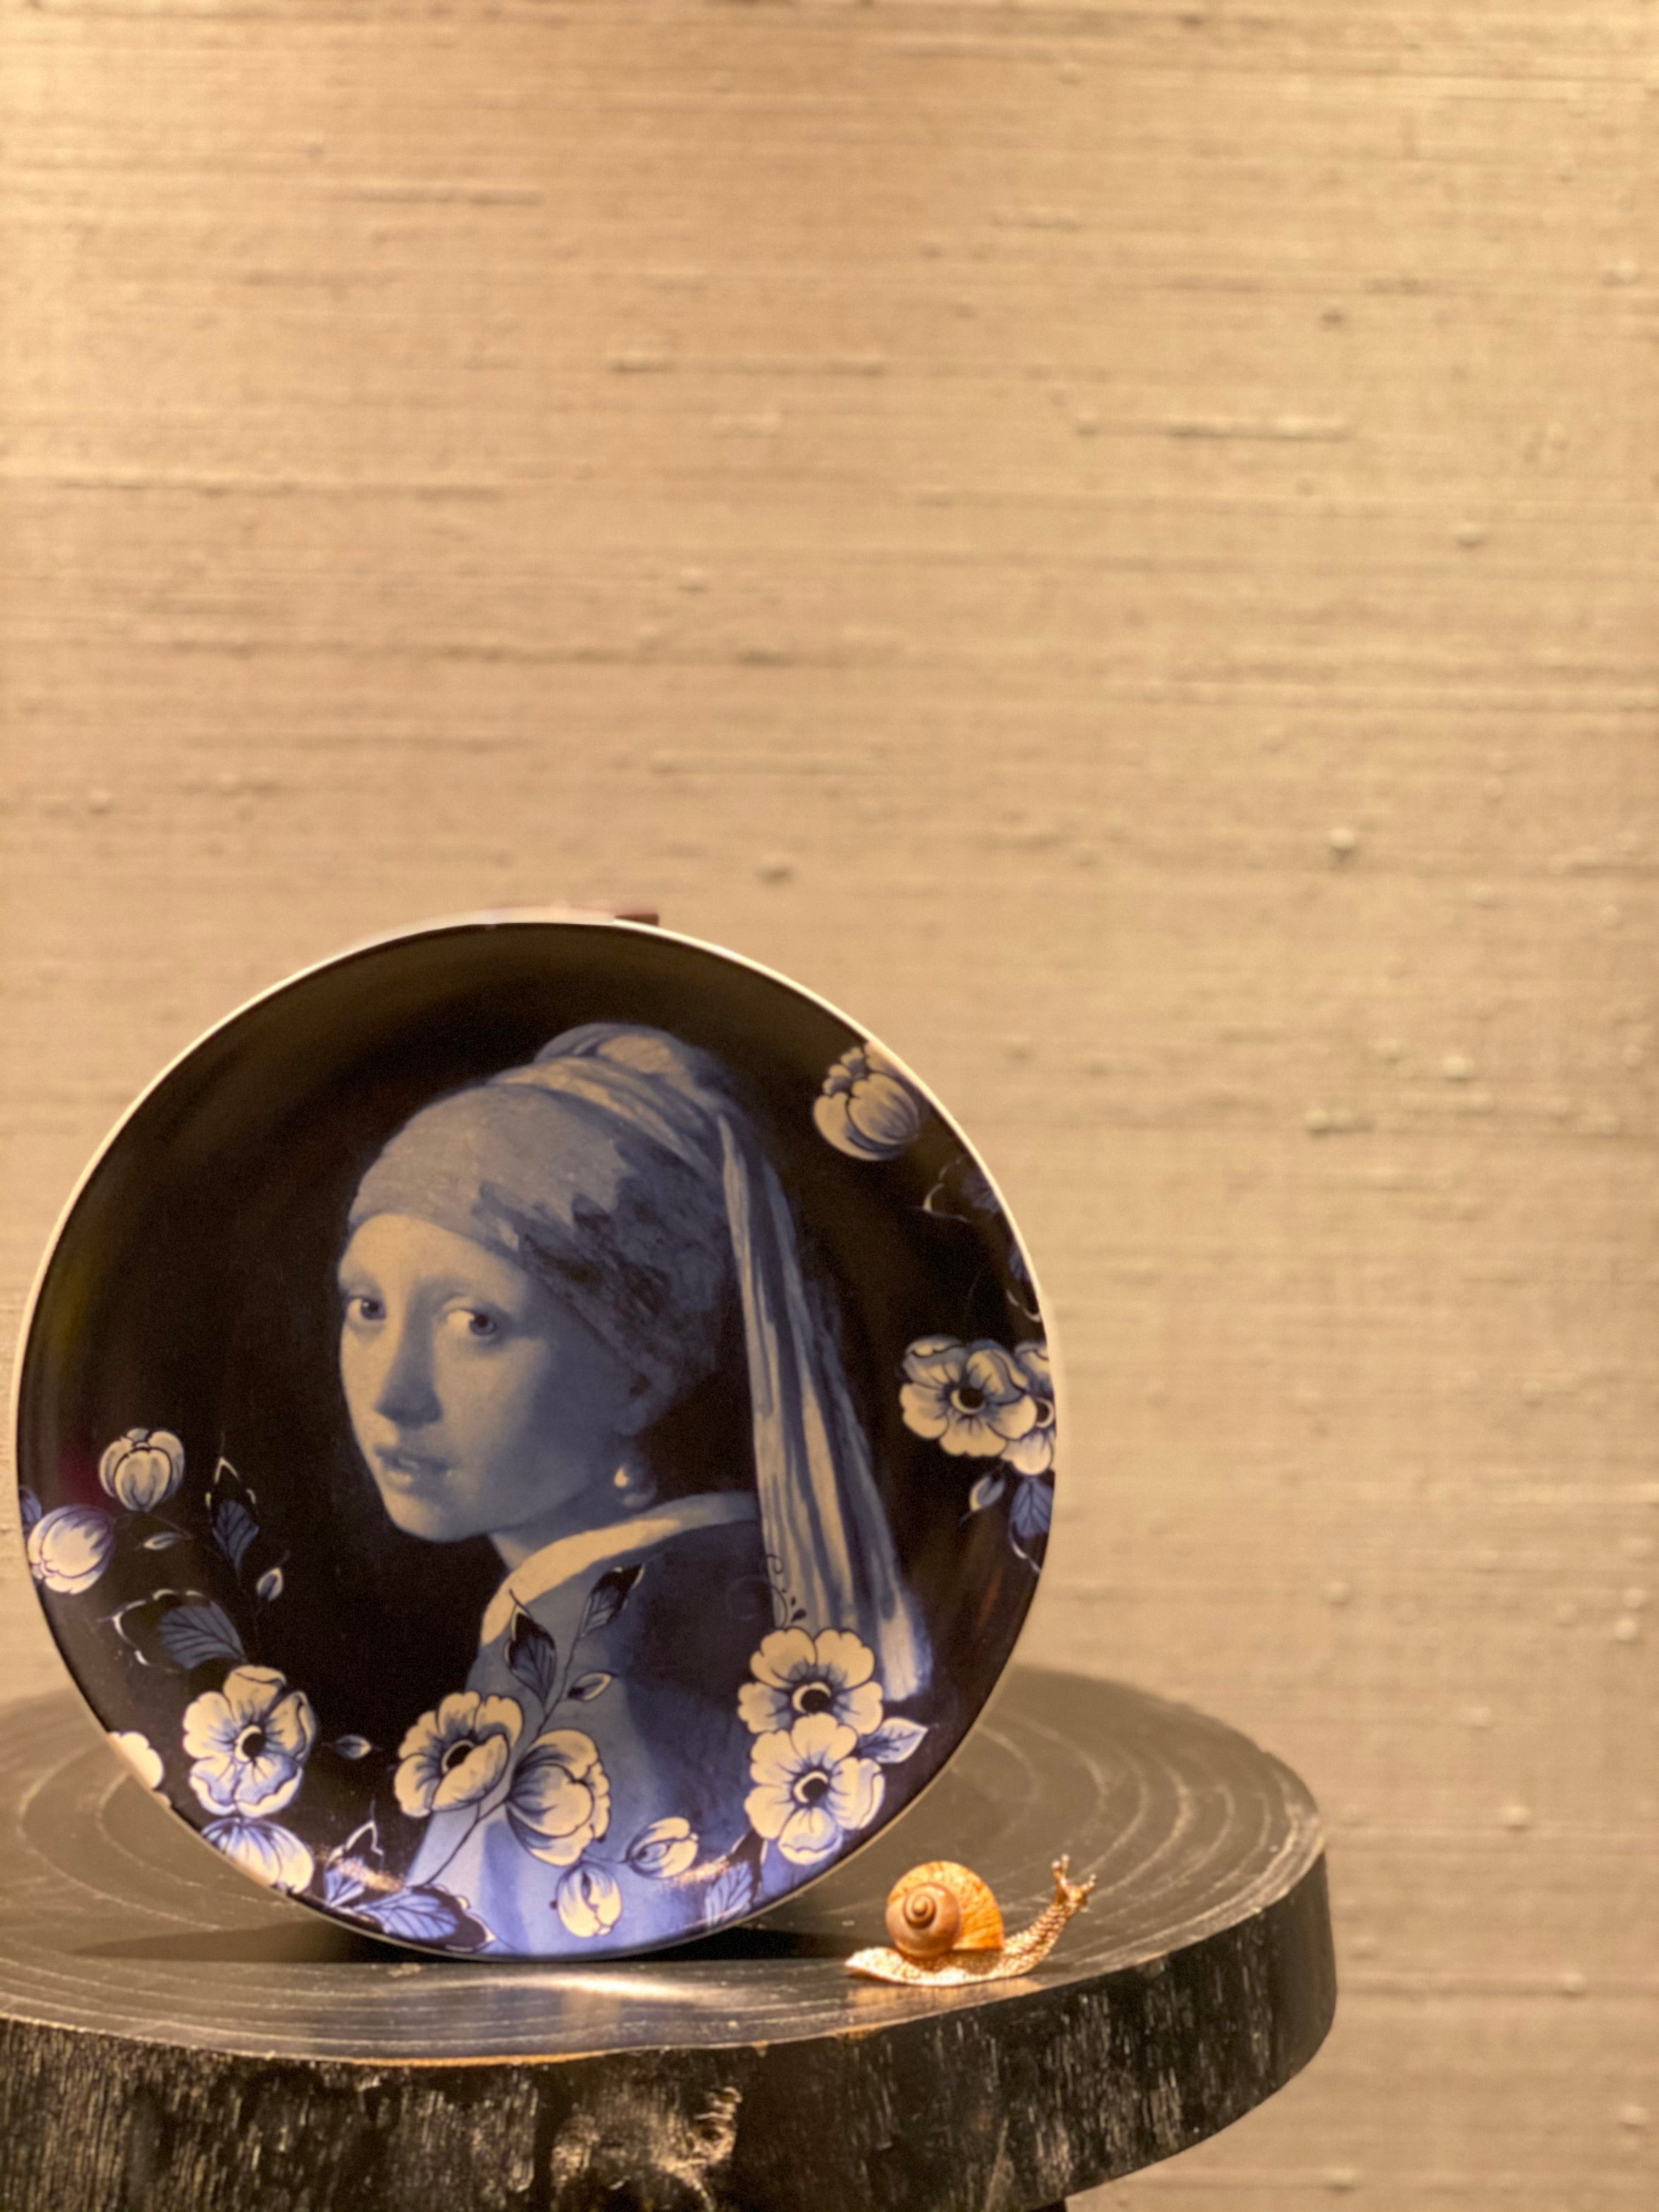 Wandbord Meisje met de Parel / Wall plate Girl with a Pearl Earring M - Decoratie / Decoration / Gifts